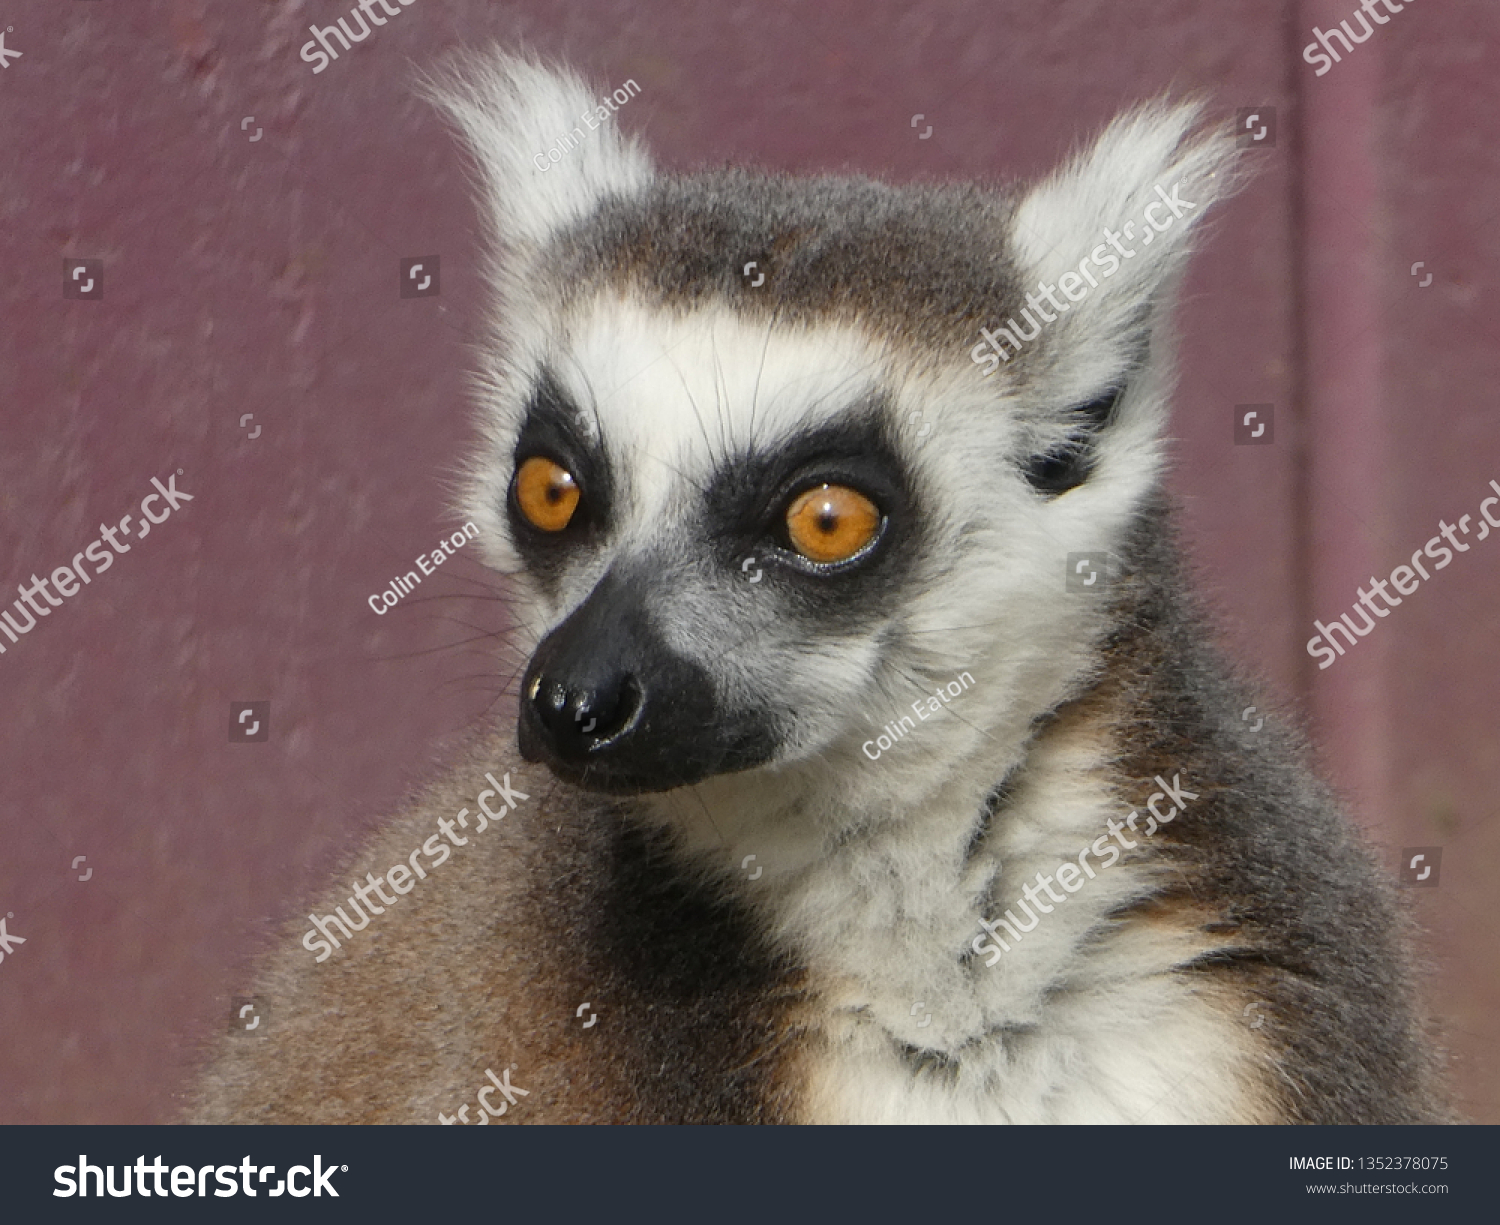 Ring tailed lemur #1352378075